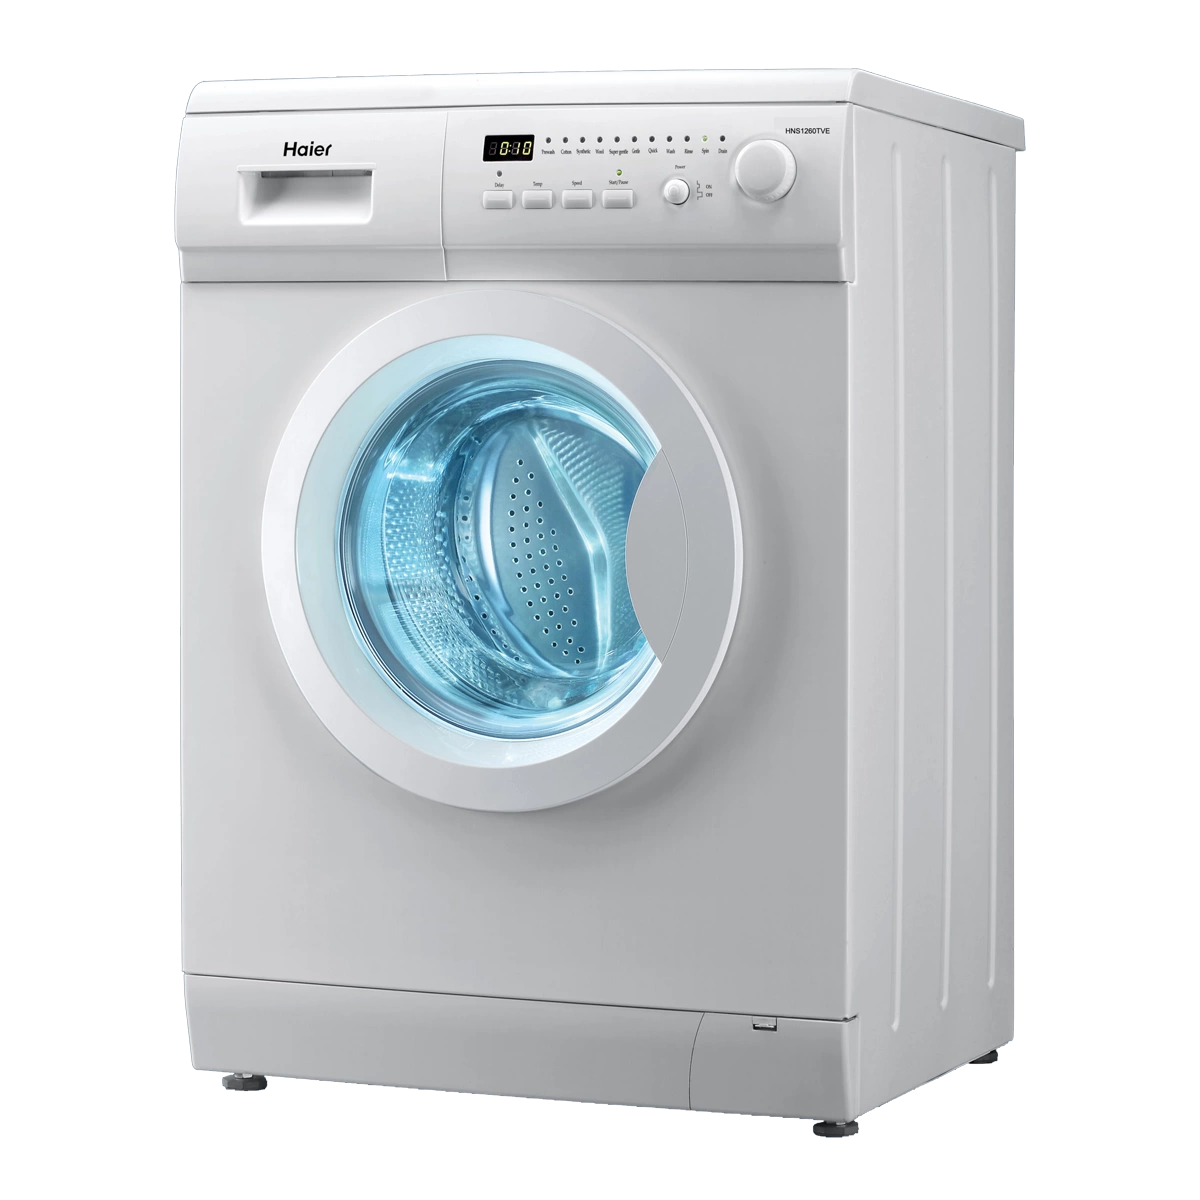 Общие сведения о конструкции стиральных машин